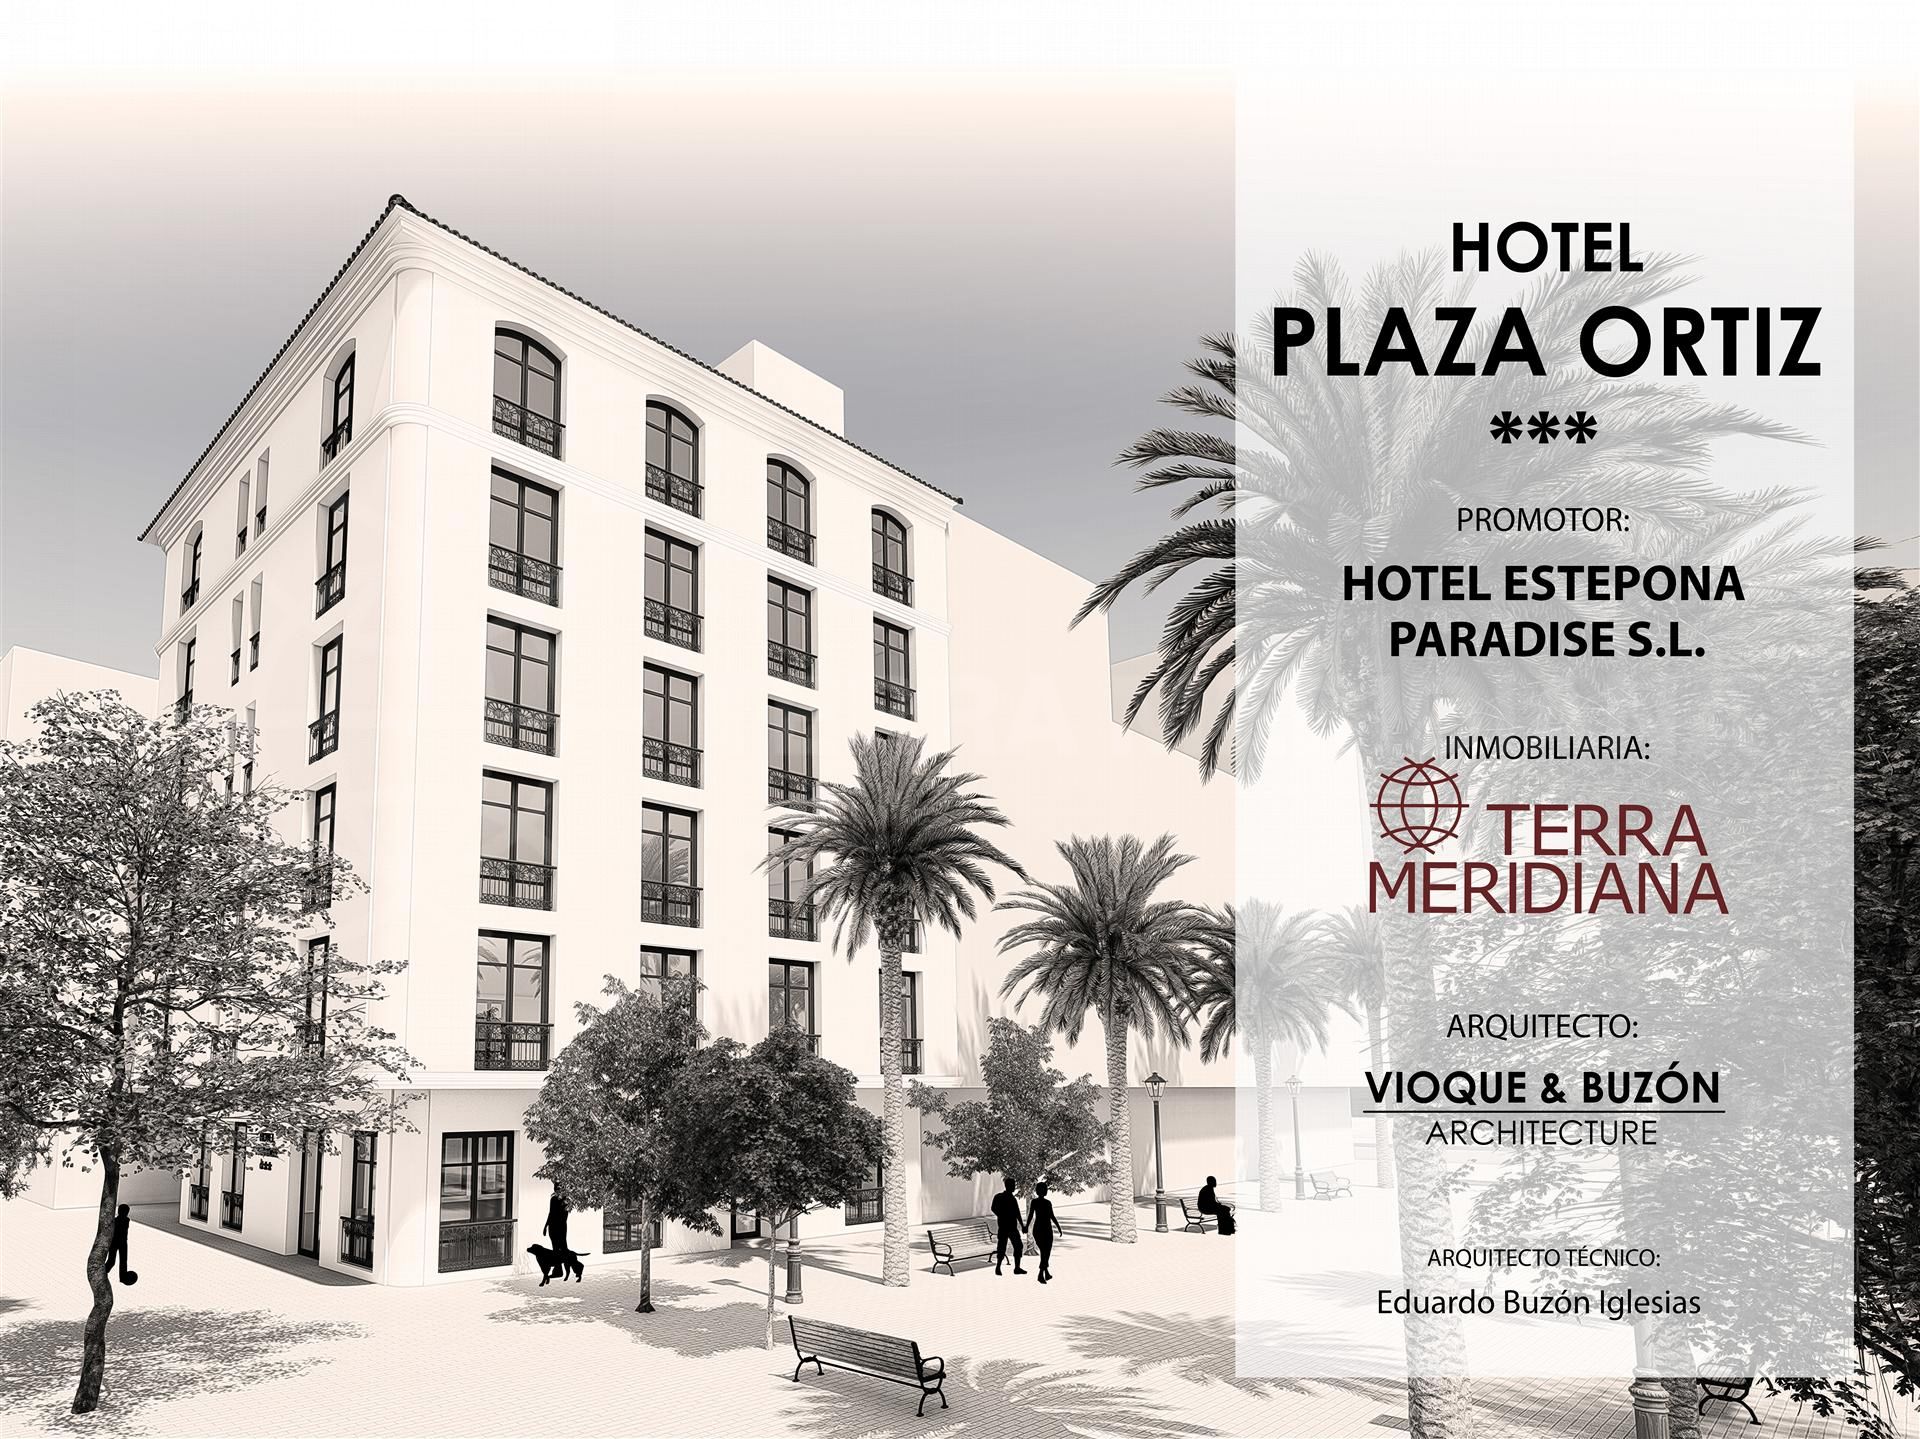 Hotel Plaza Ortiz